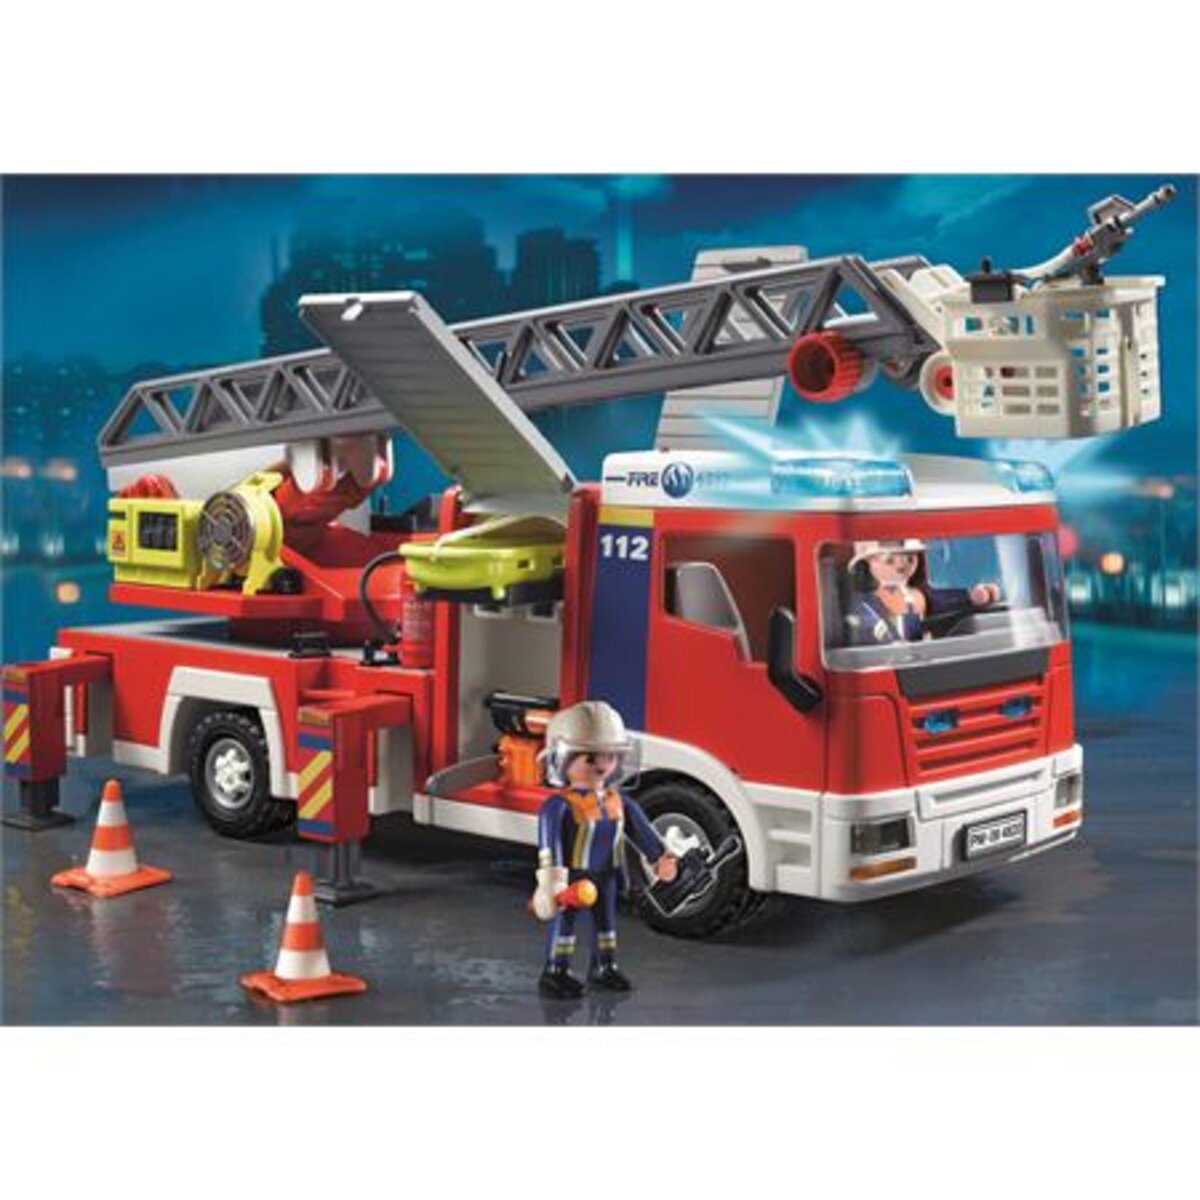 PLAYMOBIL 4820 Camion De Pompiers pas cher 